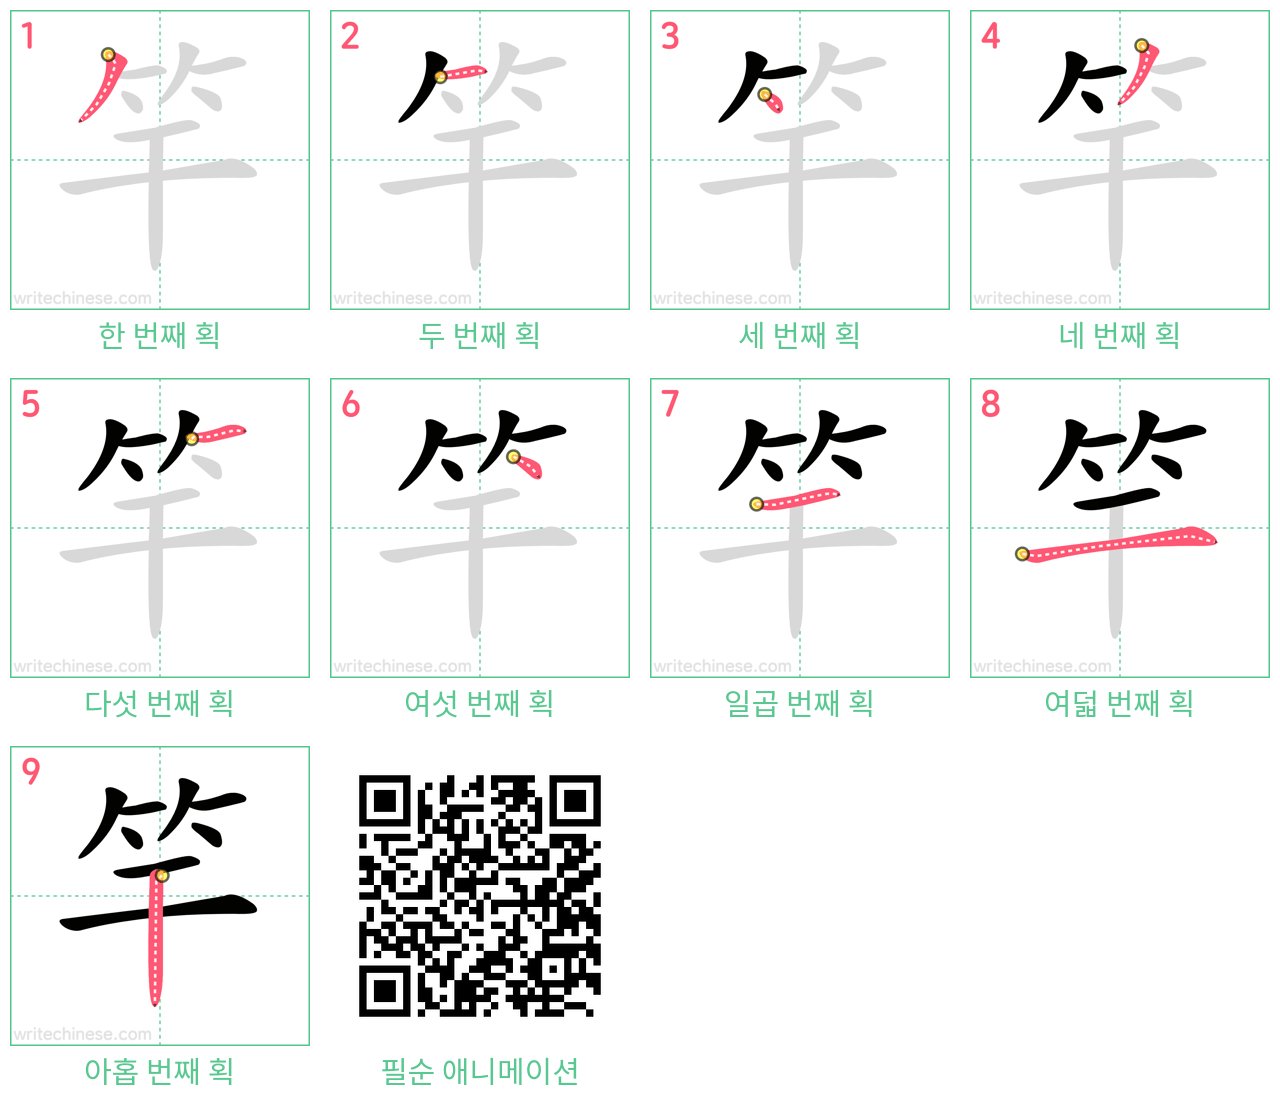 竿 step-by-step stroke order diagrams